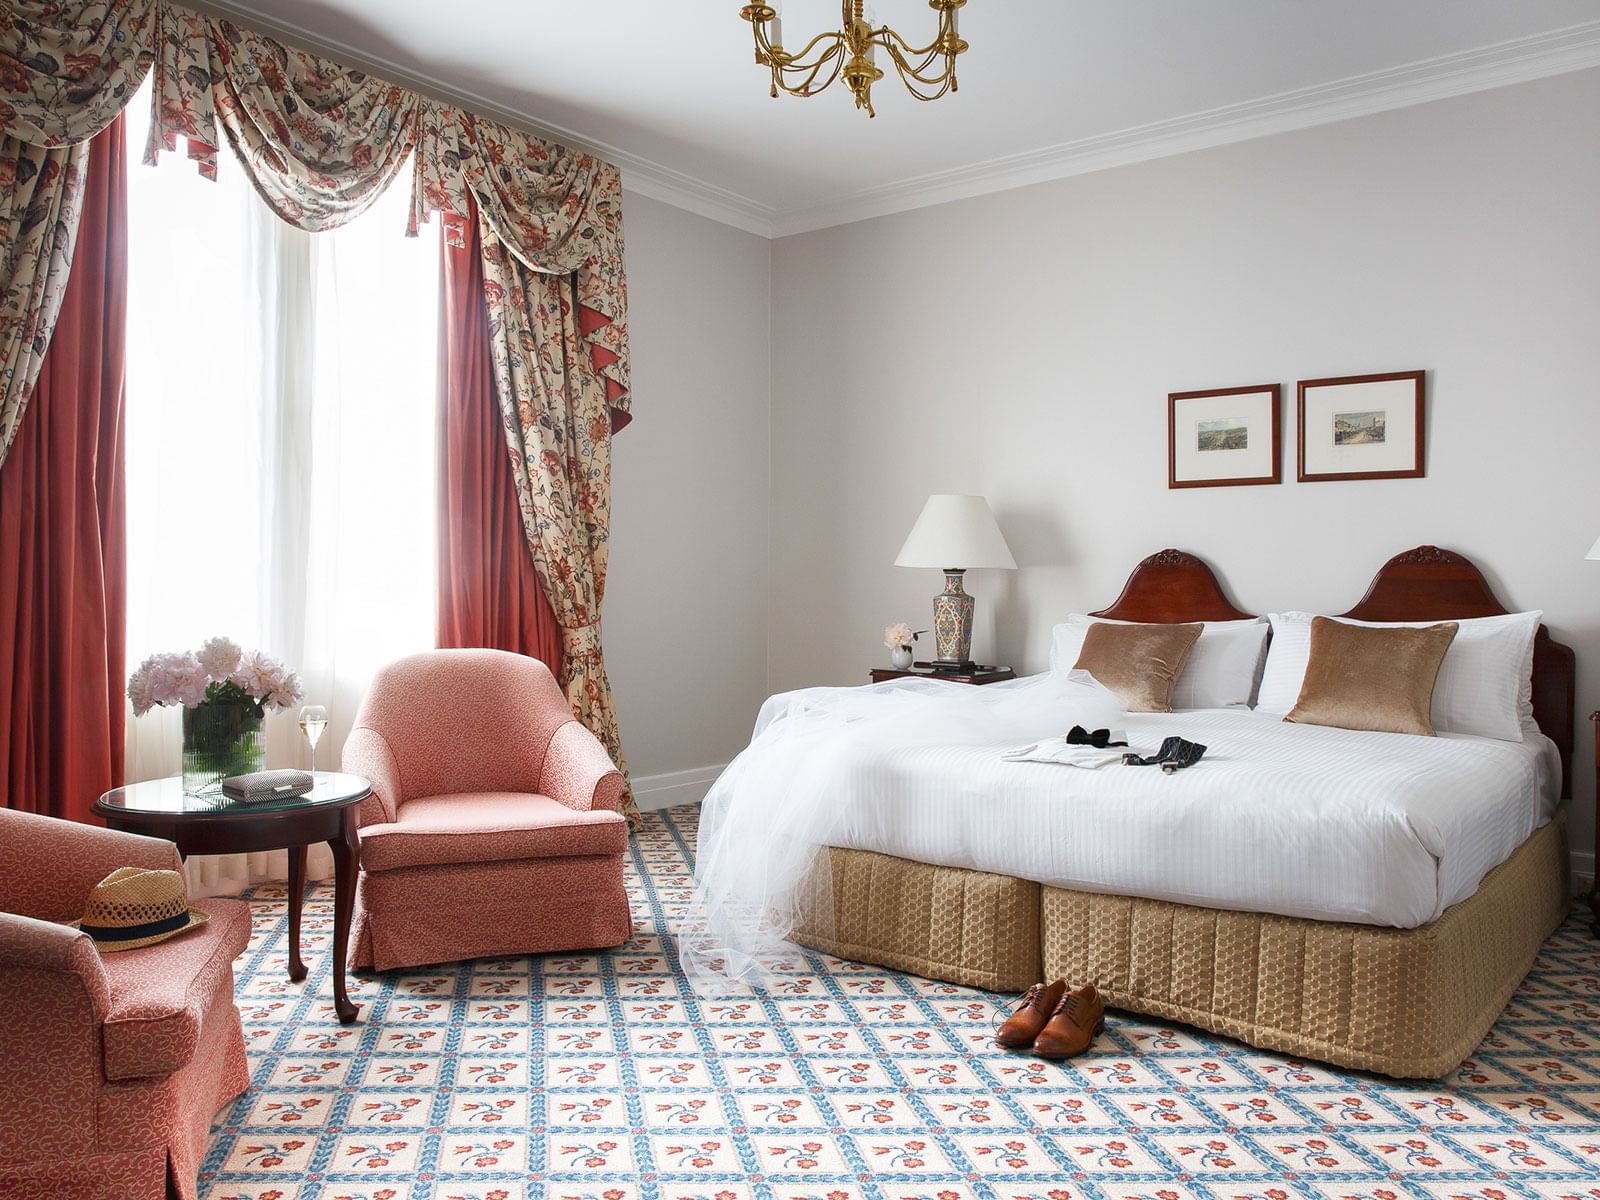 Windsor Suite Bedroom at The Hotel Windsor Melbourne